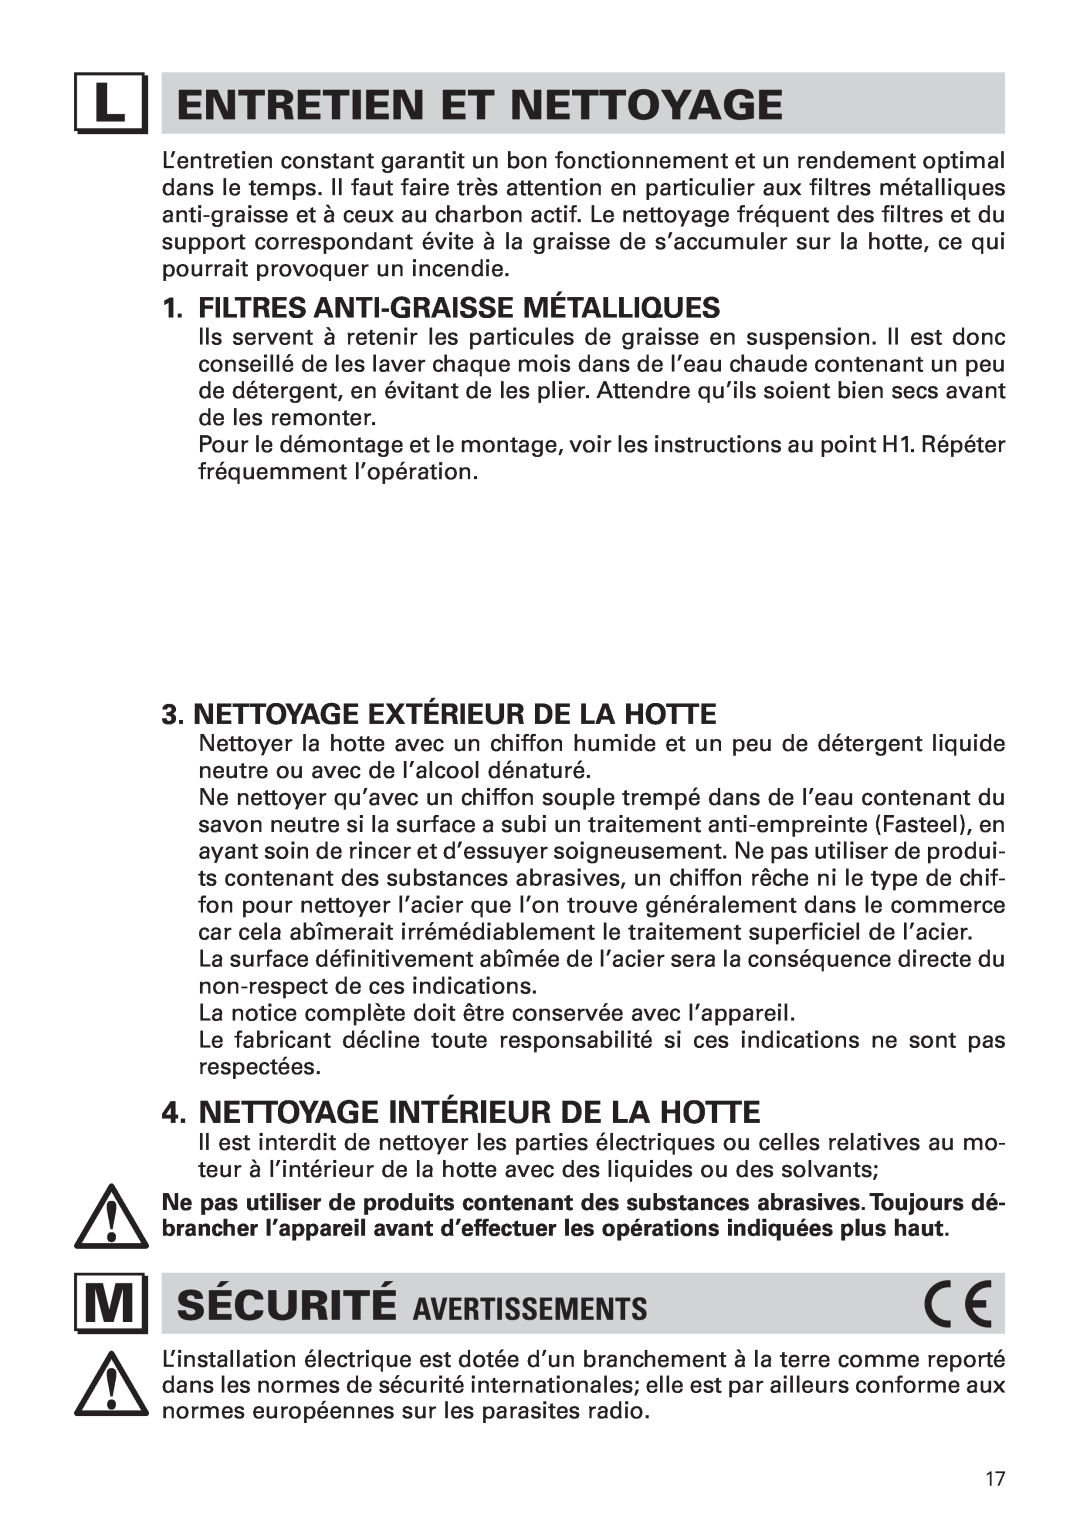 Bertazzoni KIN 36 PRO X manual Entretien Et Nettoyage, Nettoyage Intérieur De La Hotte, M Sécurité Avertissements 